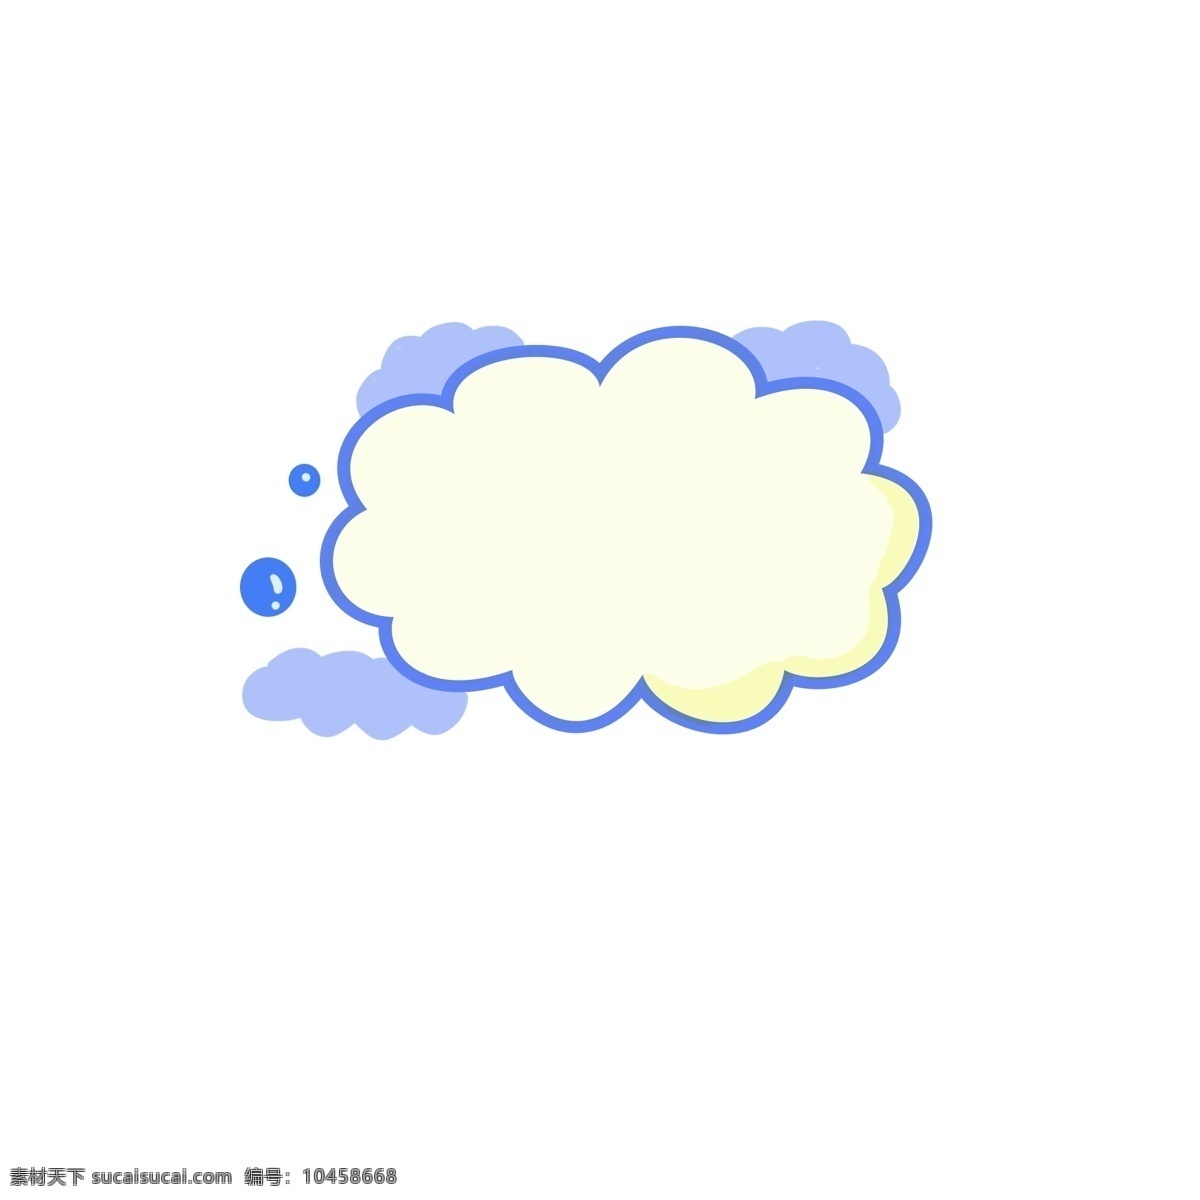 白色 云朵 蓝色 边框 装饰 白色云朵 蓝色云朵 对话框 聊天框 装饰框 花朵边框 创意装饰 简洁大方